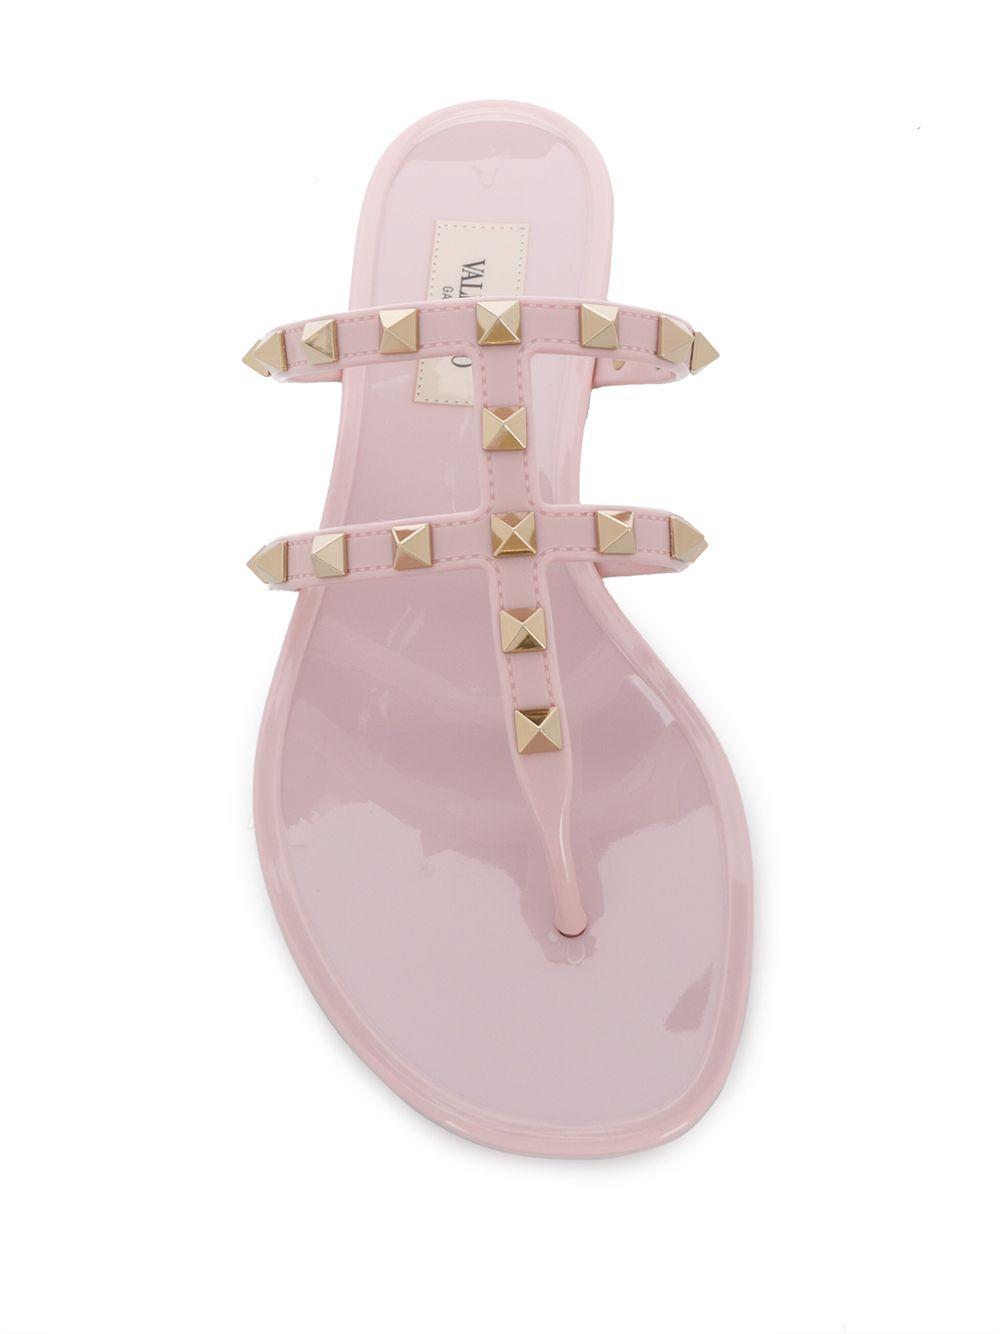 Valentino Garavani Rubber Rockstud Flip Flops in Pink - Save 6% - Lyst